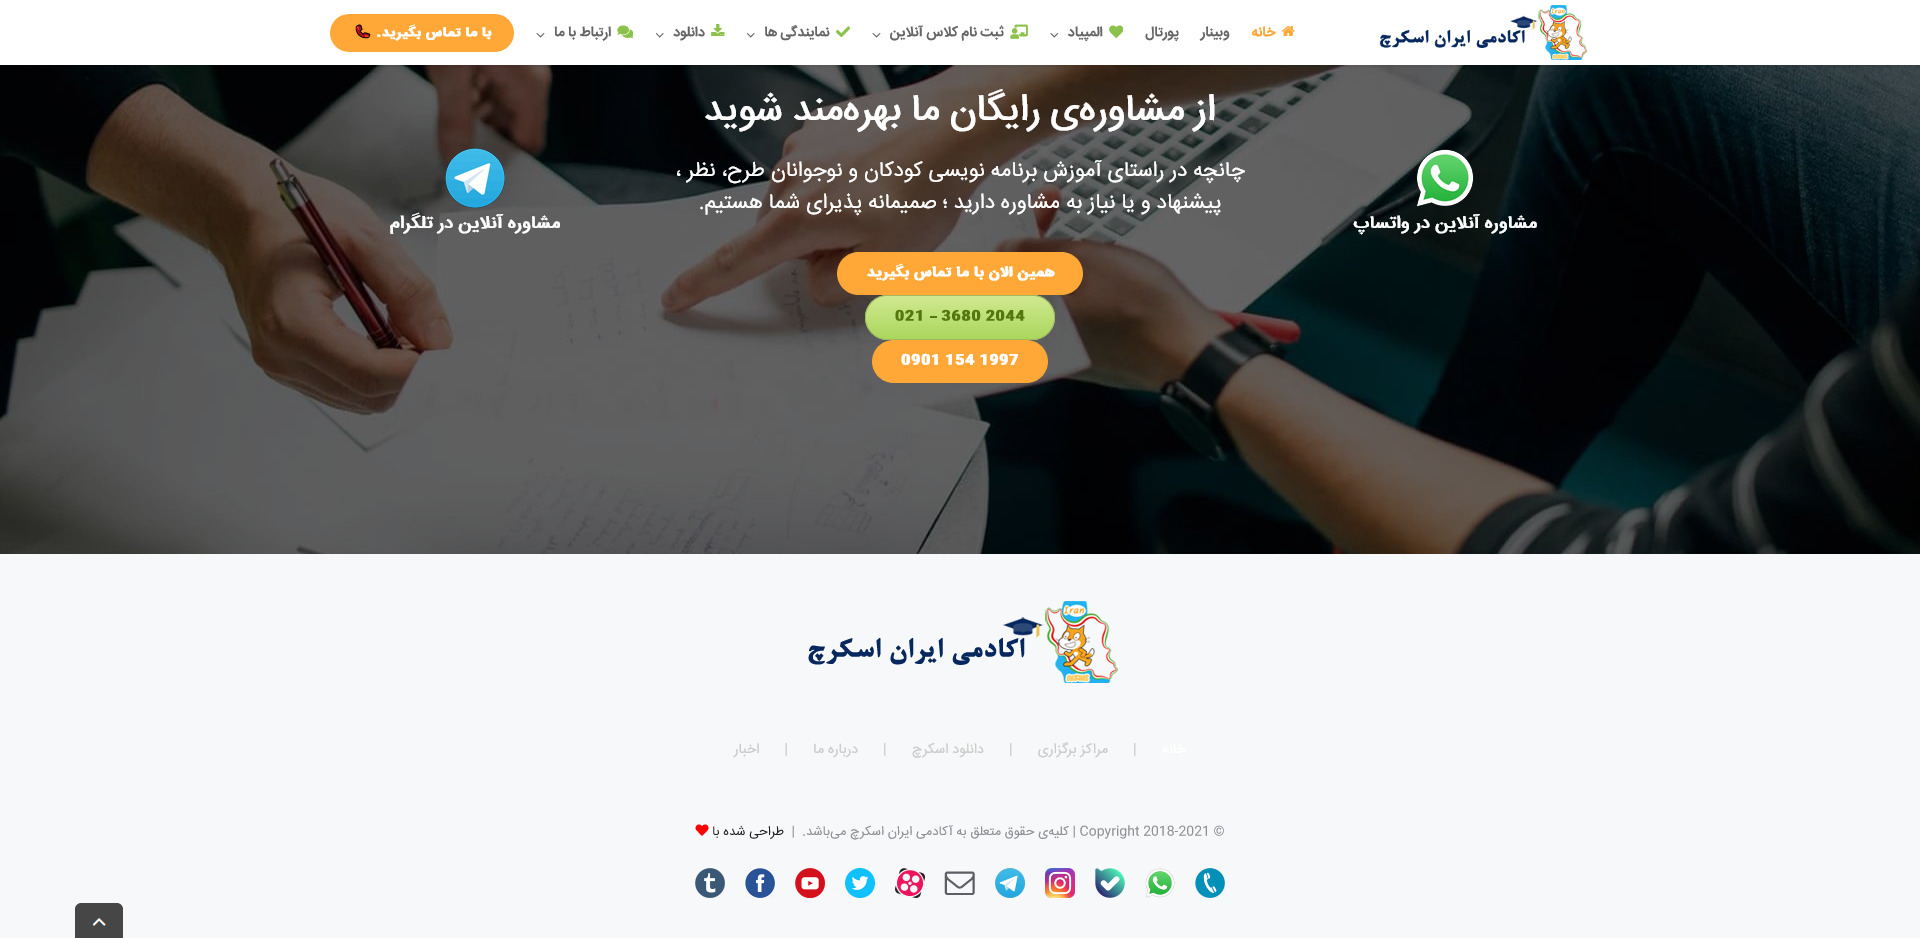 فوتر وبسایت محتوا و خدماتی آموزش برنامه نویسی به کودکان اسفند ۱۳۹۹